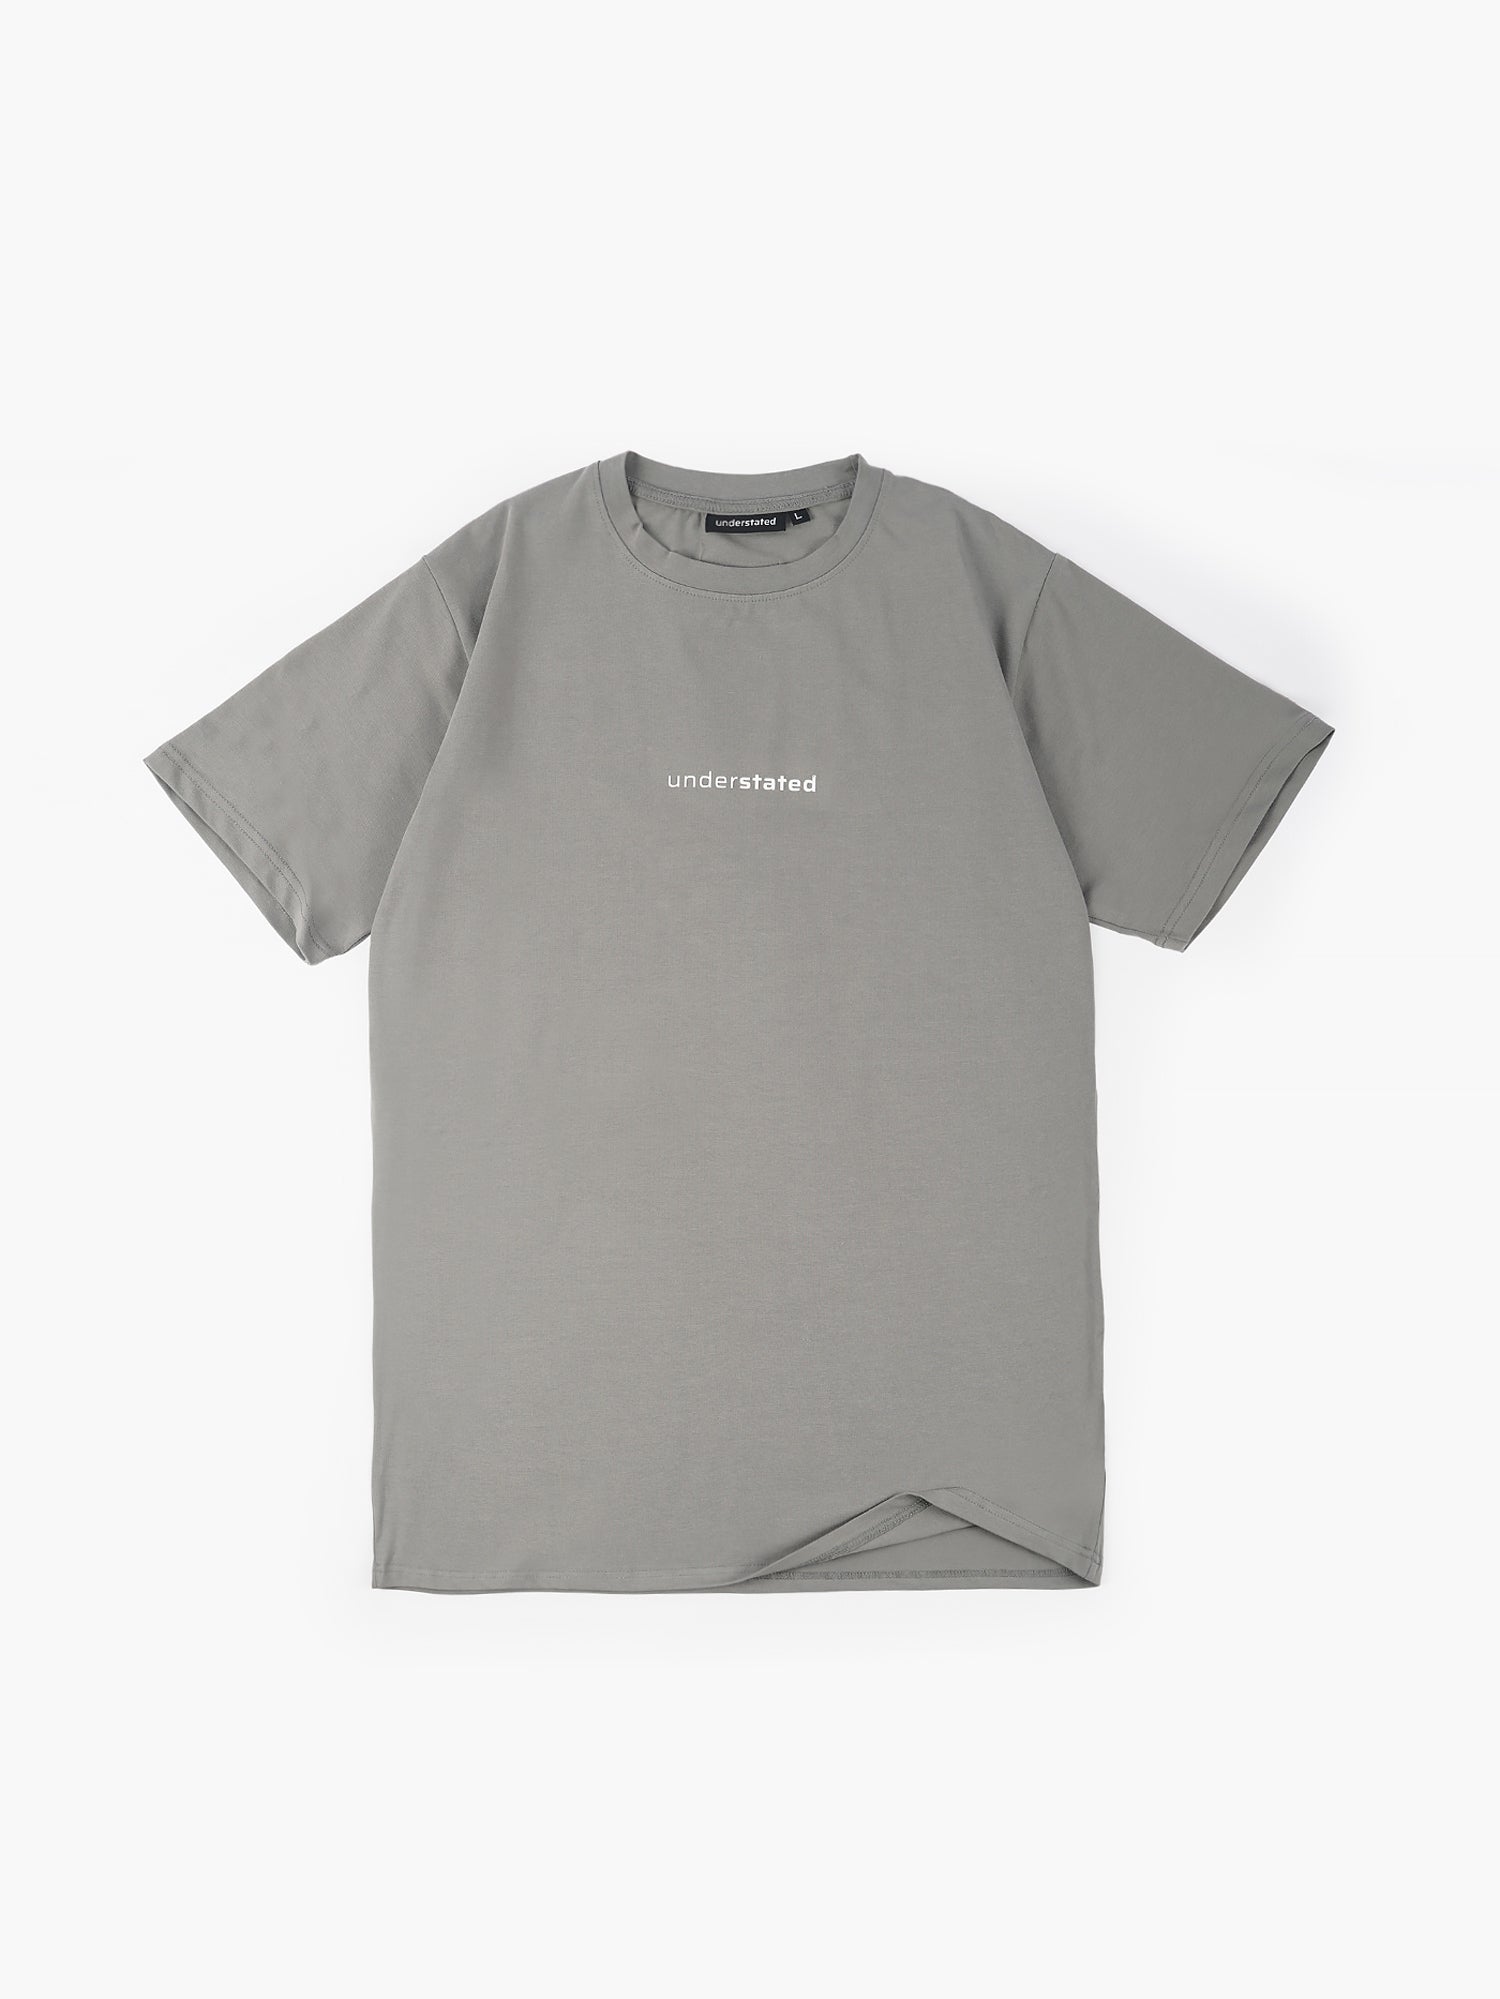 Understated / Regular T-Shirt (Stone Gray)